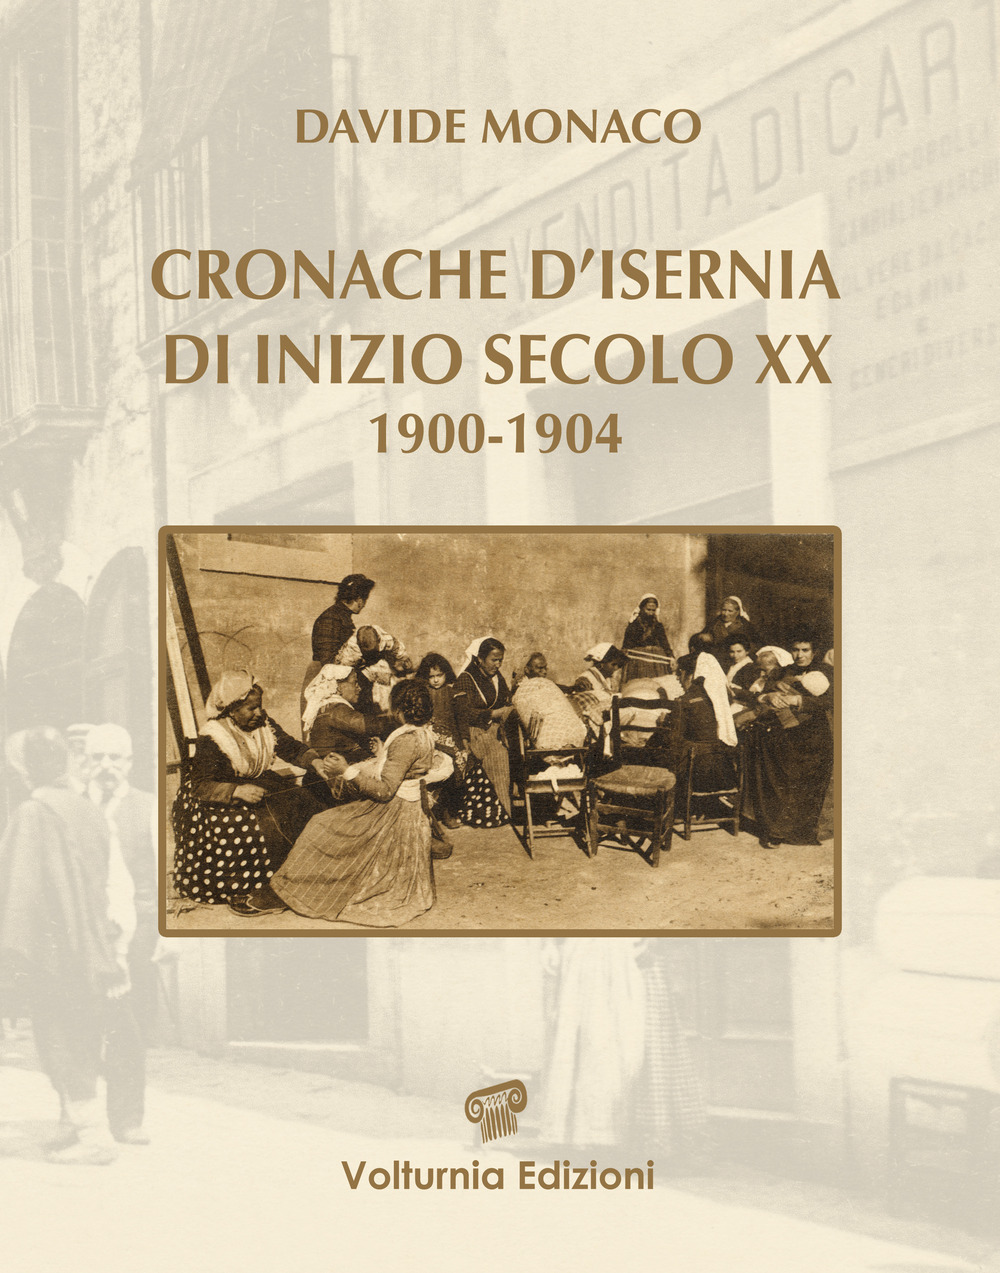 Libri Davide Monaco - Cronache D'isernia Di Inizio Secolo XX (1900-1904) NUOVO SIGILLATO, EDIZIONE DEL 15/12/2021 SUBITO DISPONIBILE